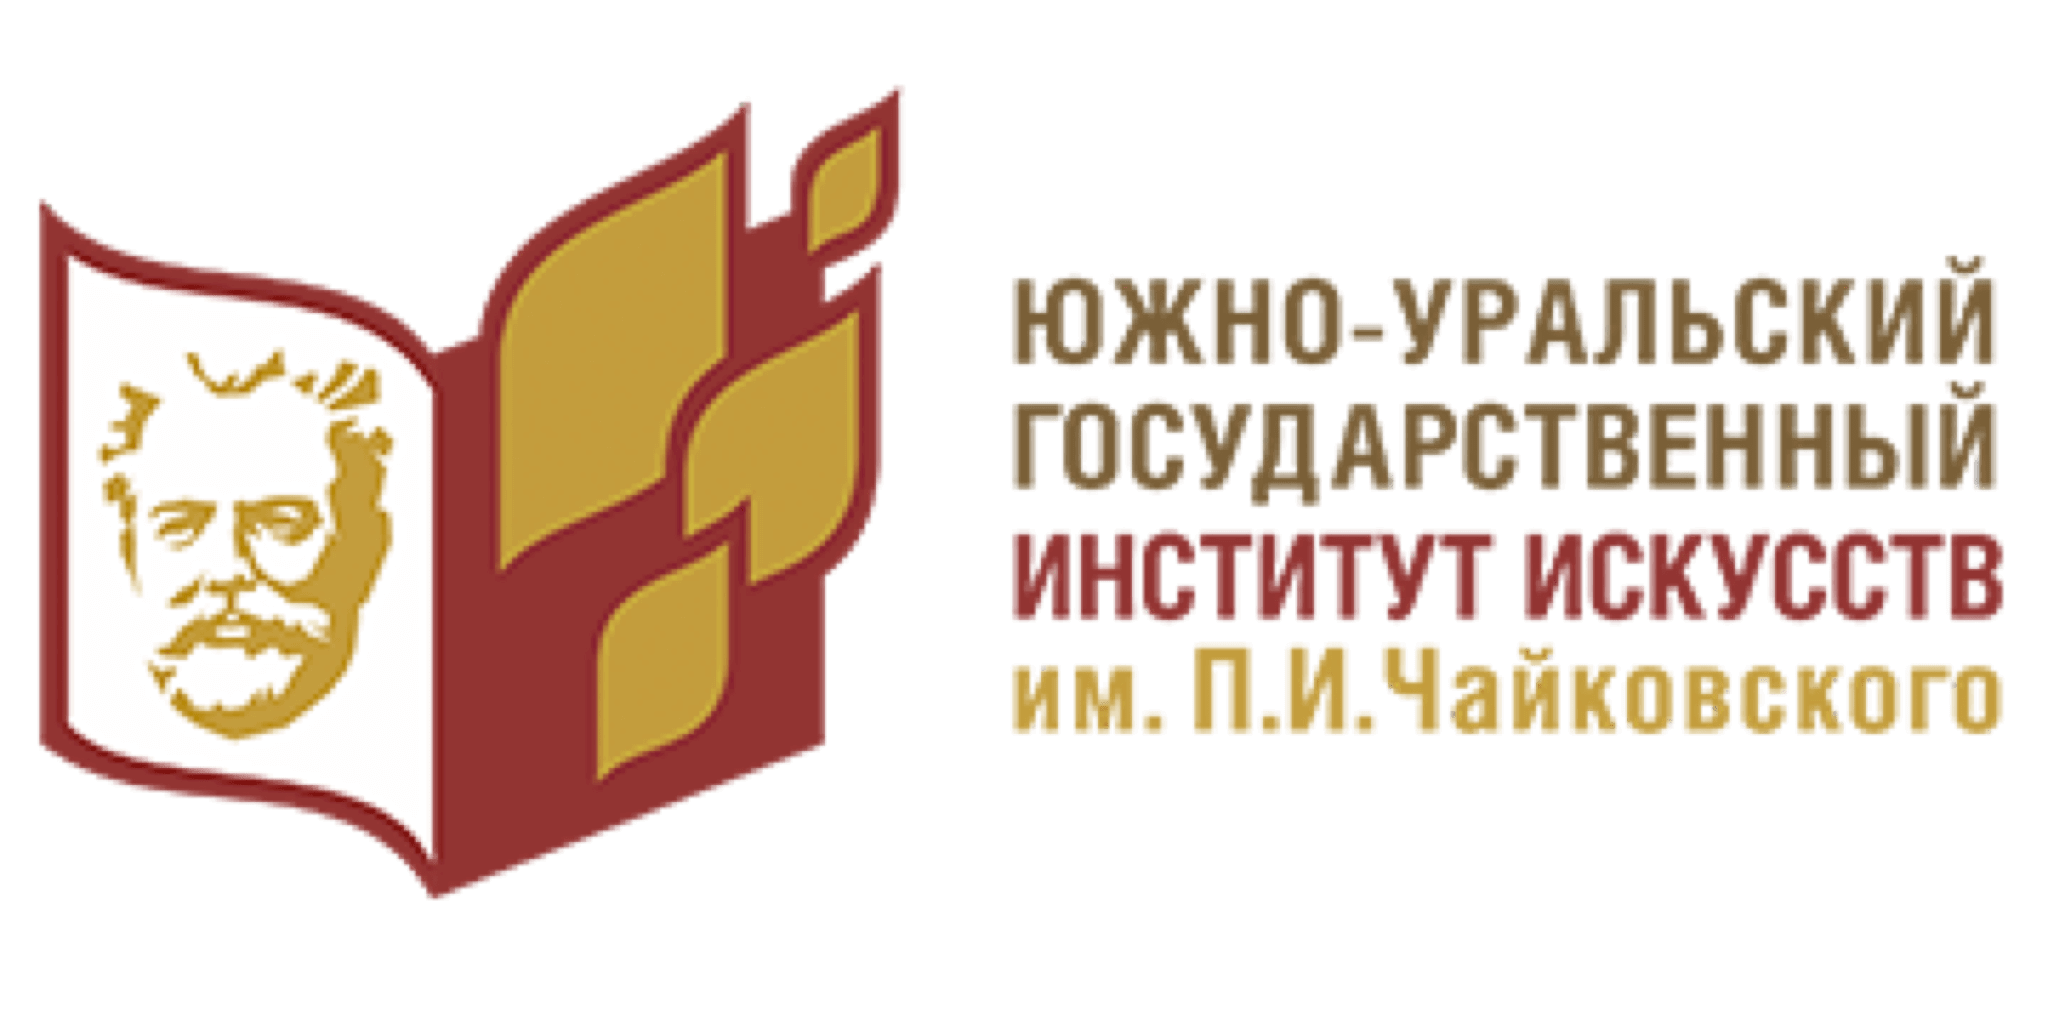 логотип вуза